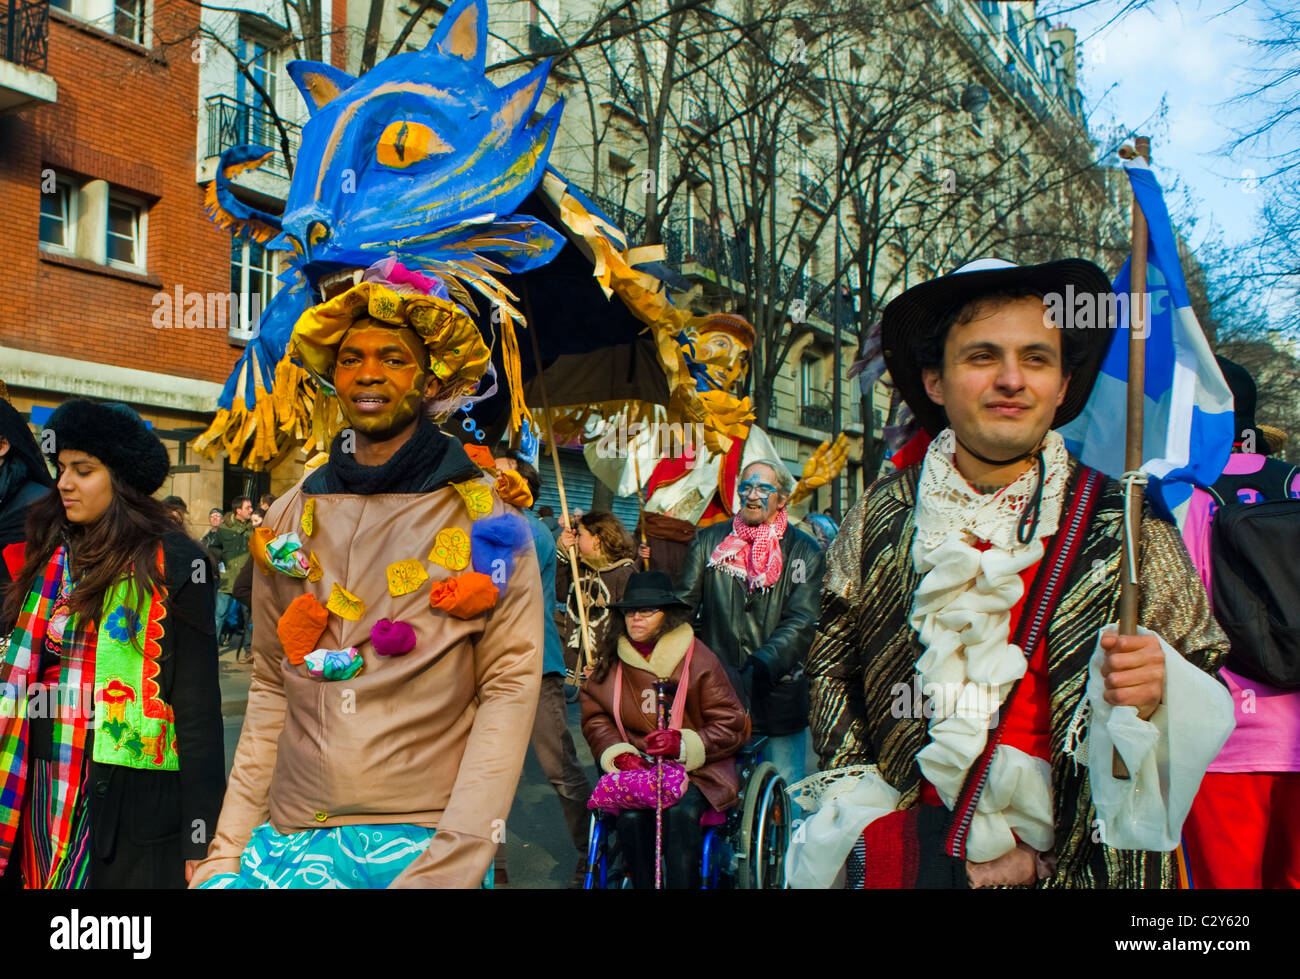 Paris, France, Français célébrant le défilé annuel du carnaval, hommes en costumes traditionnels, cultures différentes, vacances amusantes, colorées, foule diversifiée de gens devant Banque D'Images